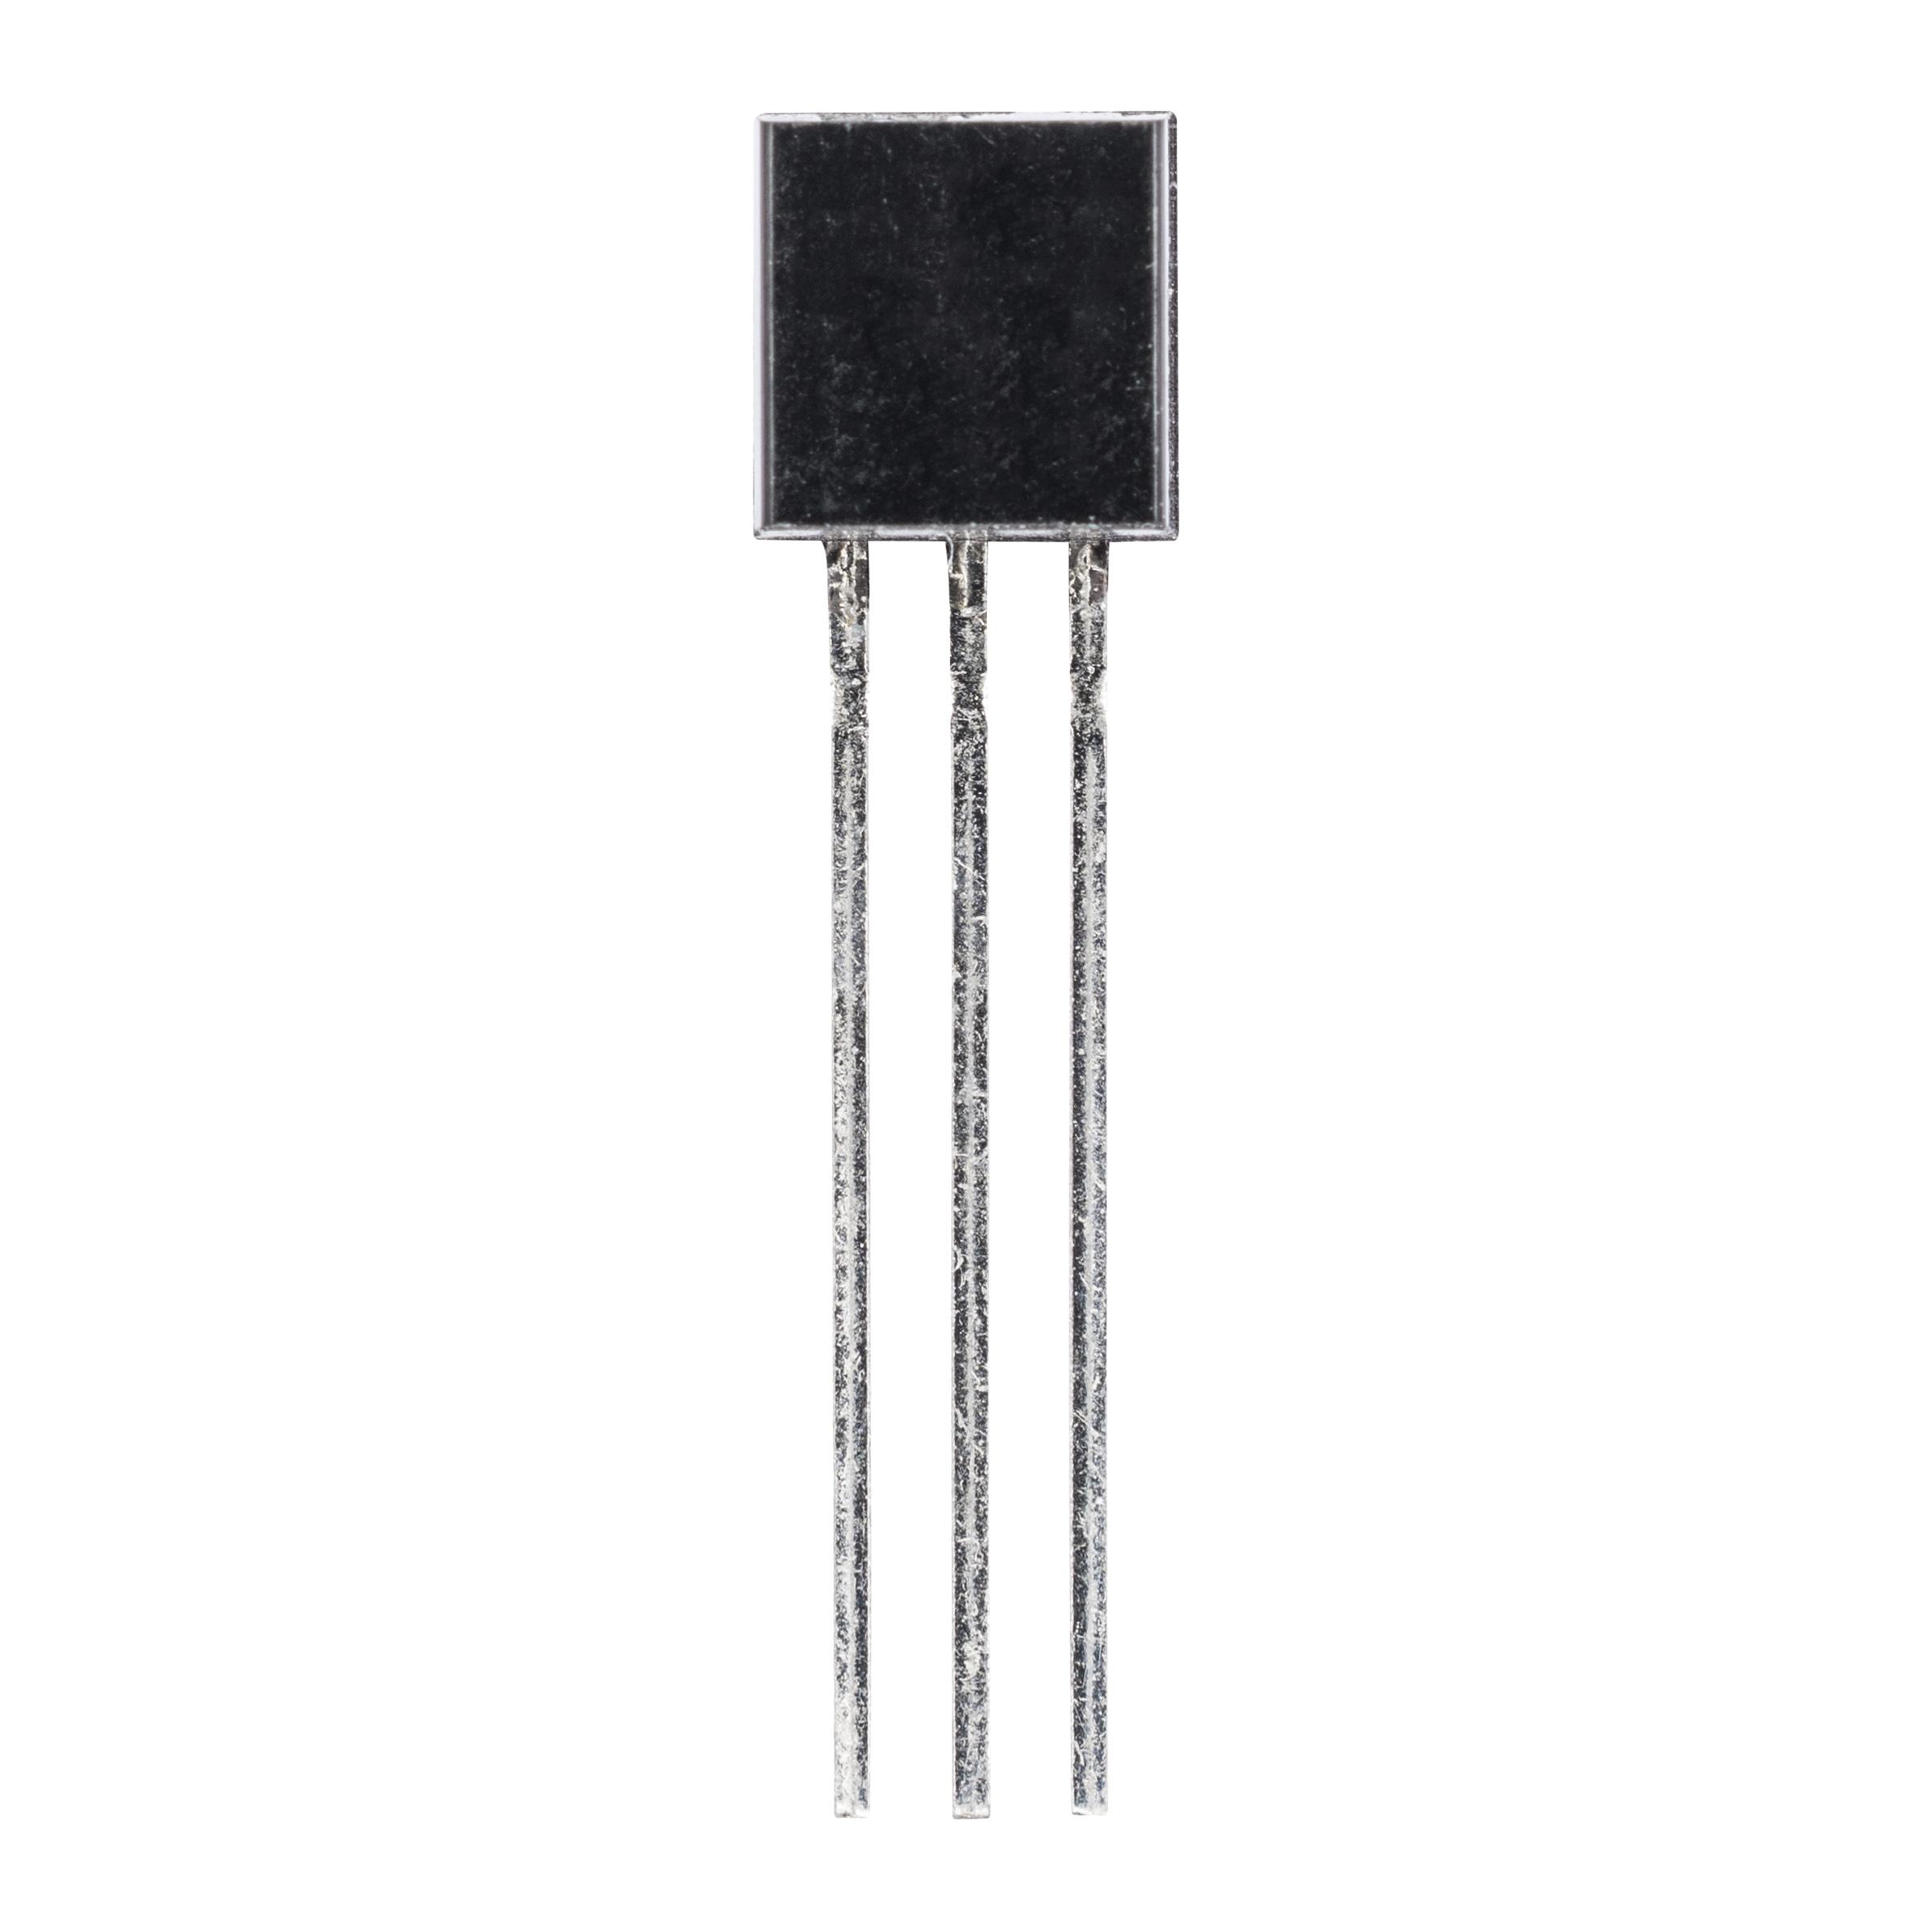 BC546B (Bipolartransistor NPN)